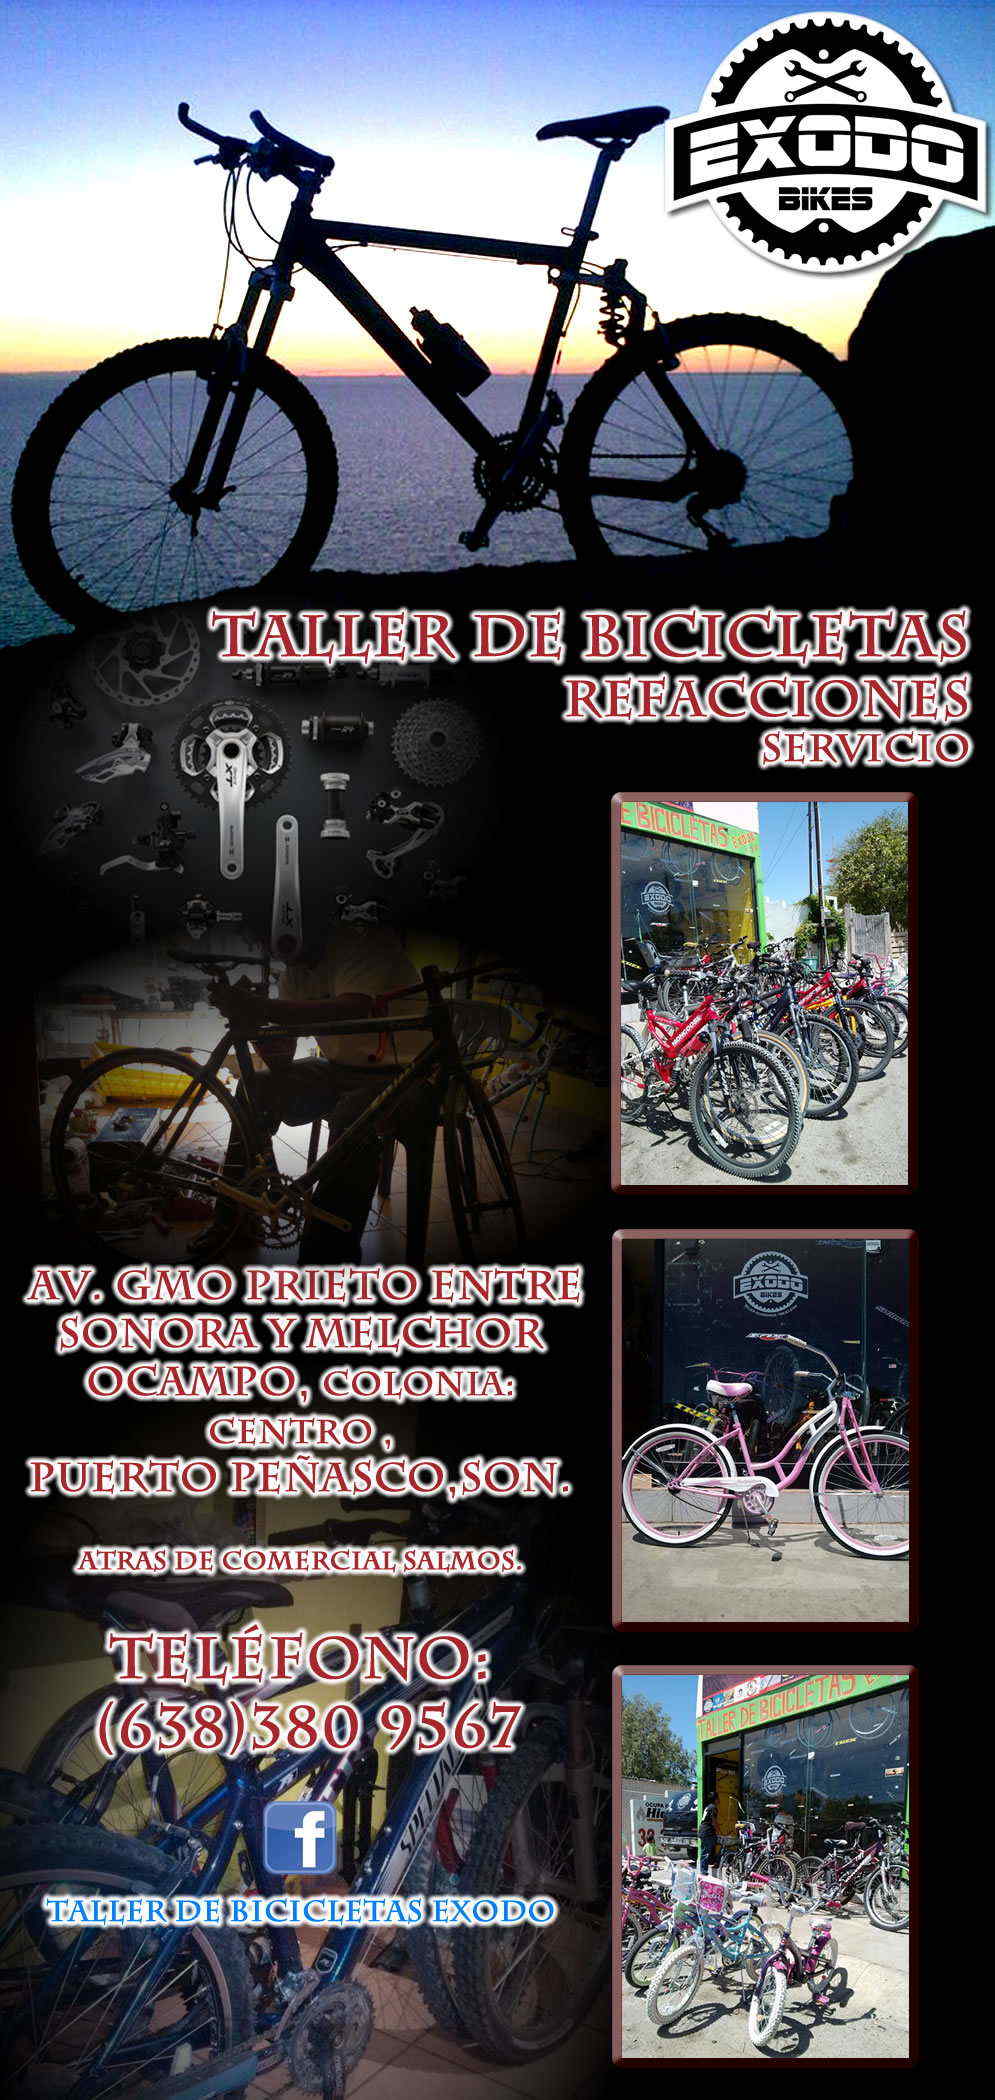 Taller y Refaccionaria de Bicicletas EXODO-Tallery Reparacion de bicicletas. Venta de accesorios.